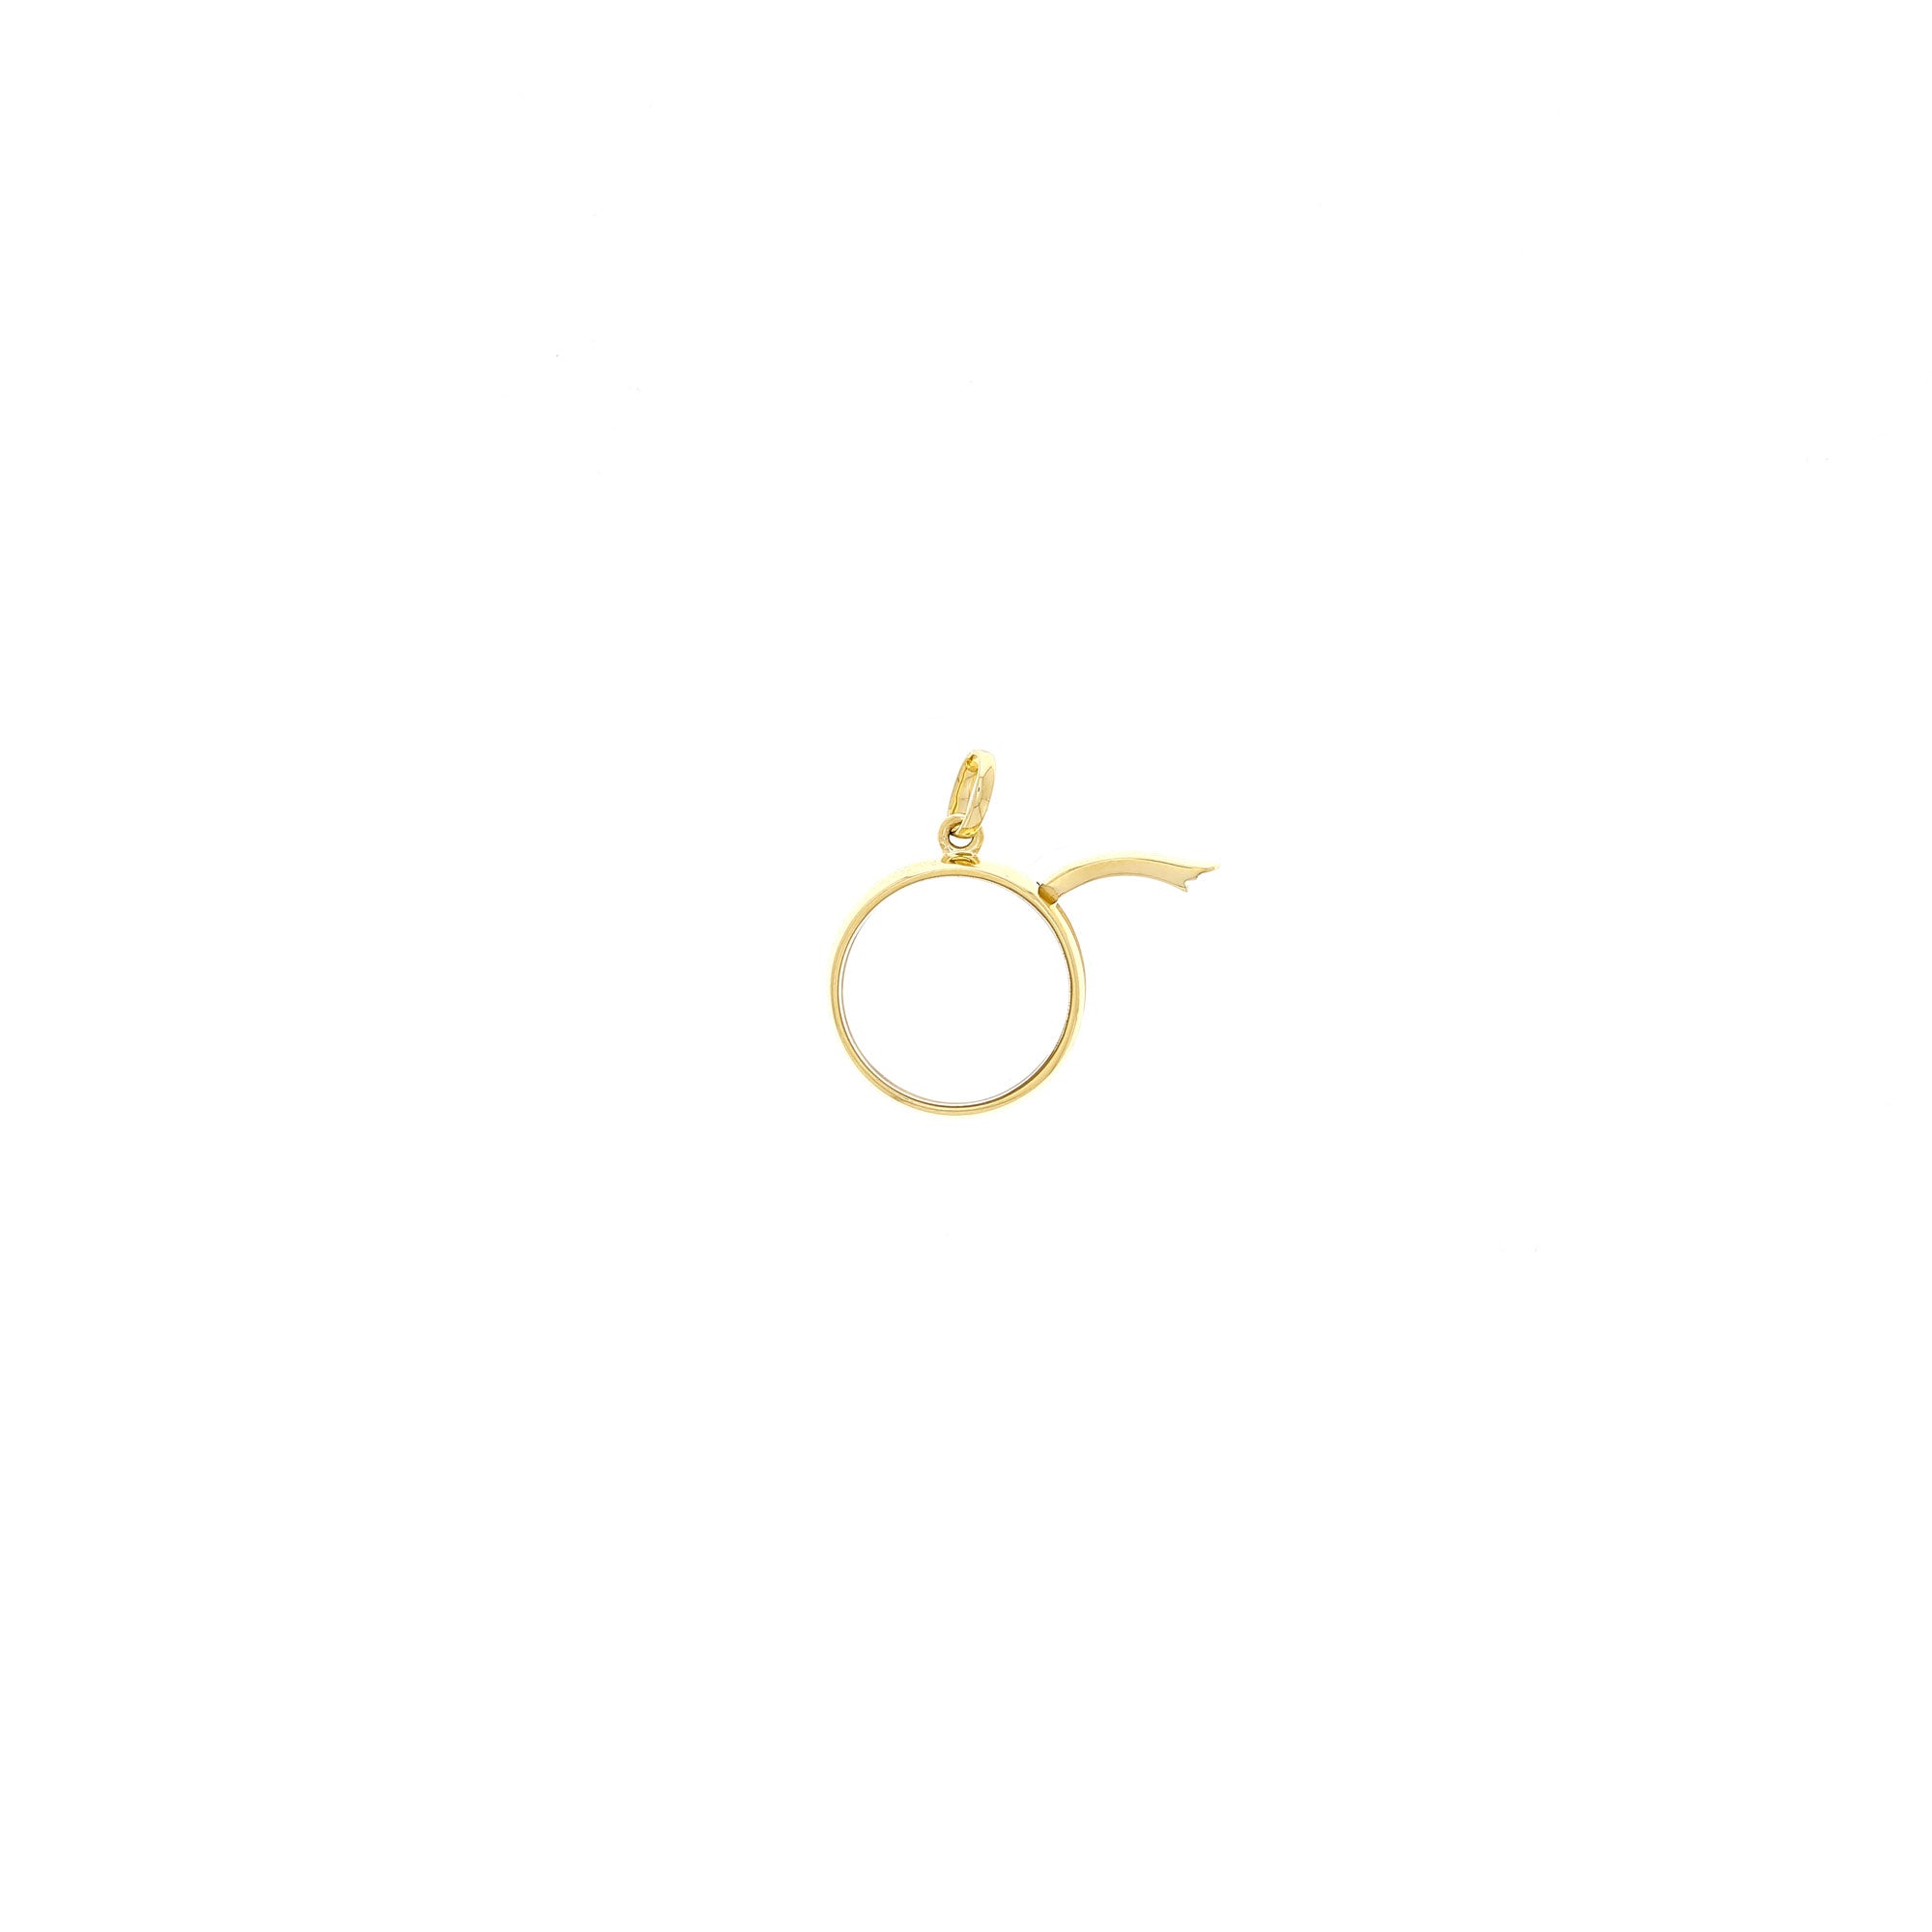 Medium Round Gold Locket Pendant